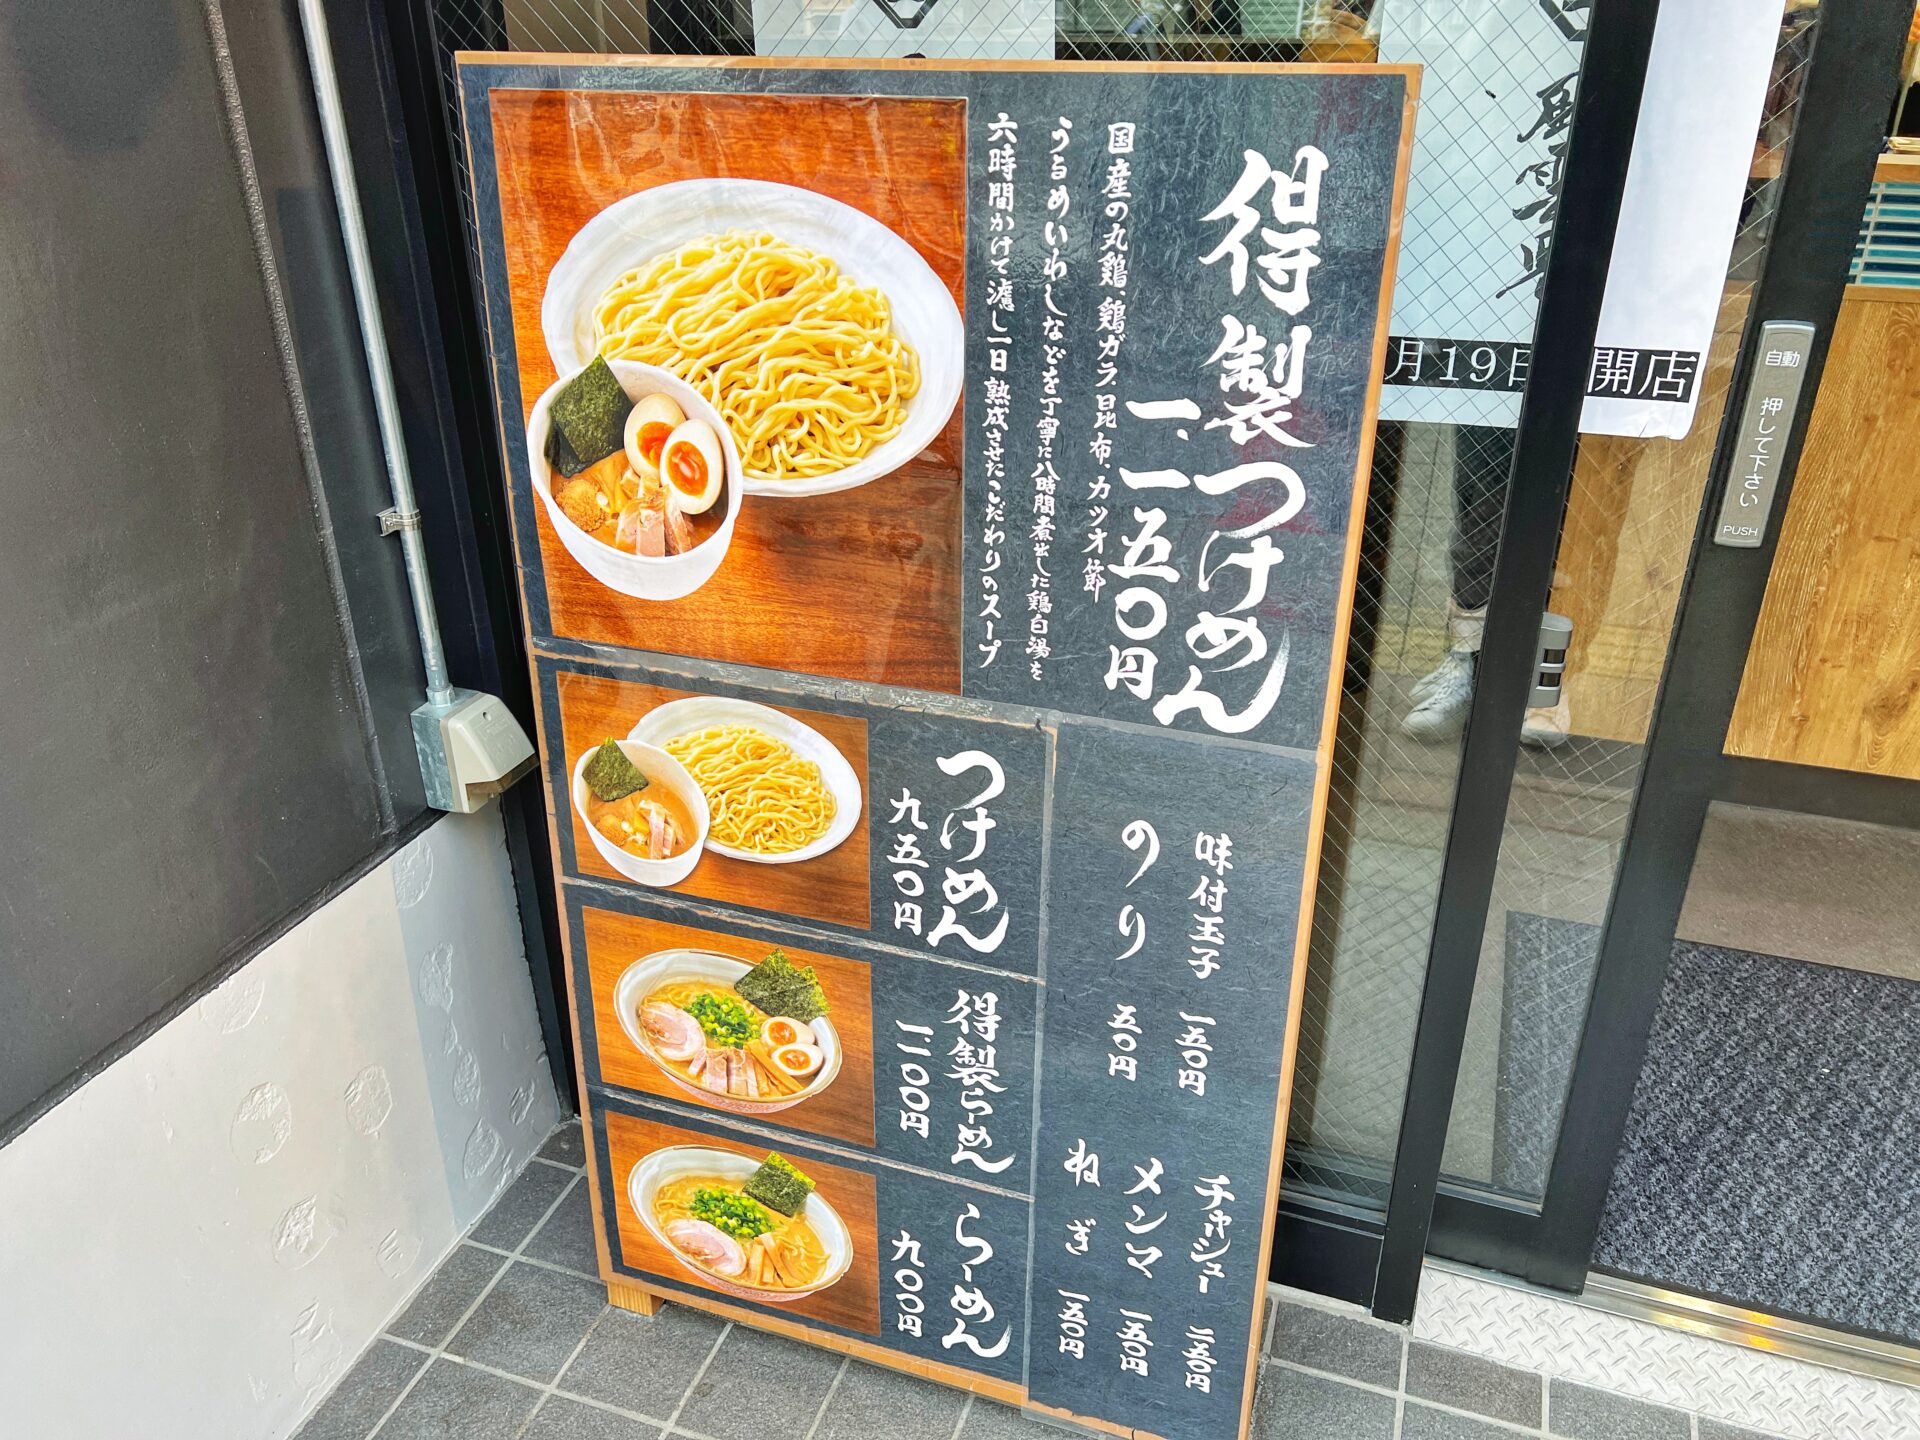 新店「風雲児 大宮店」駅前に新宿の超有名つけ麺屋が開店したので得製つけ麺を食べてきた